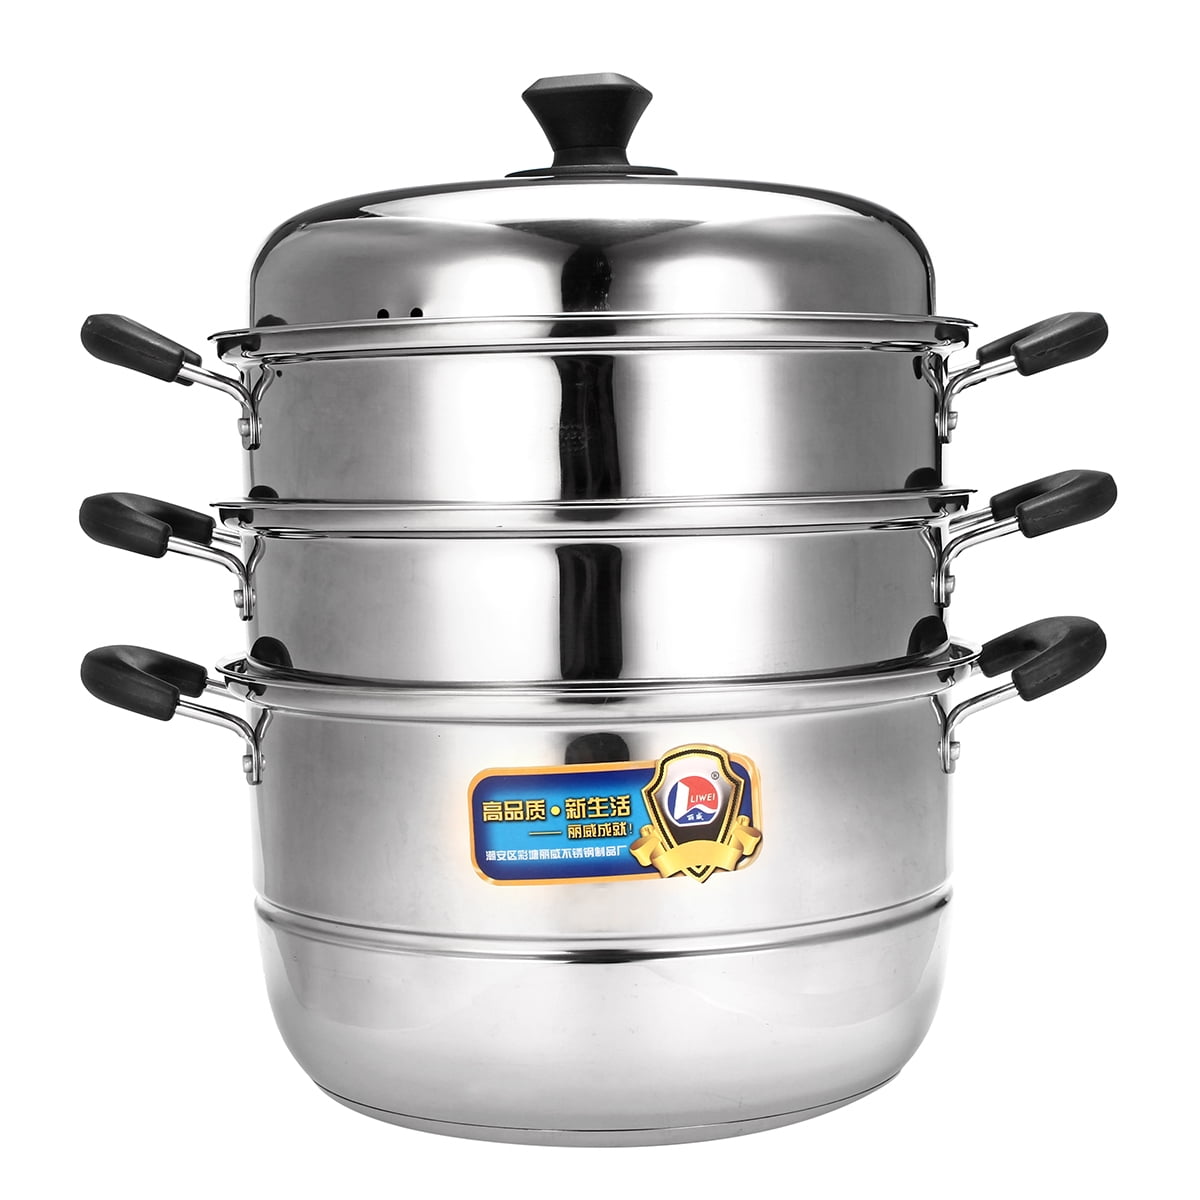 3 Tier Stainless Steel Steam Cooker Steamer Cook Food Veg Pot Set 